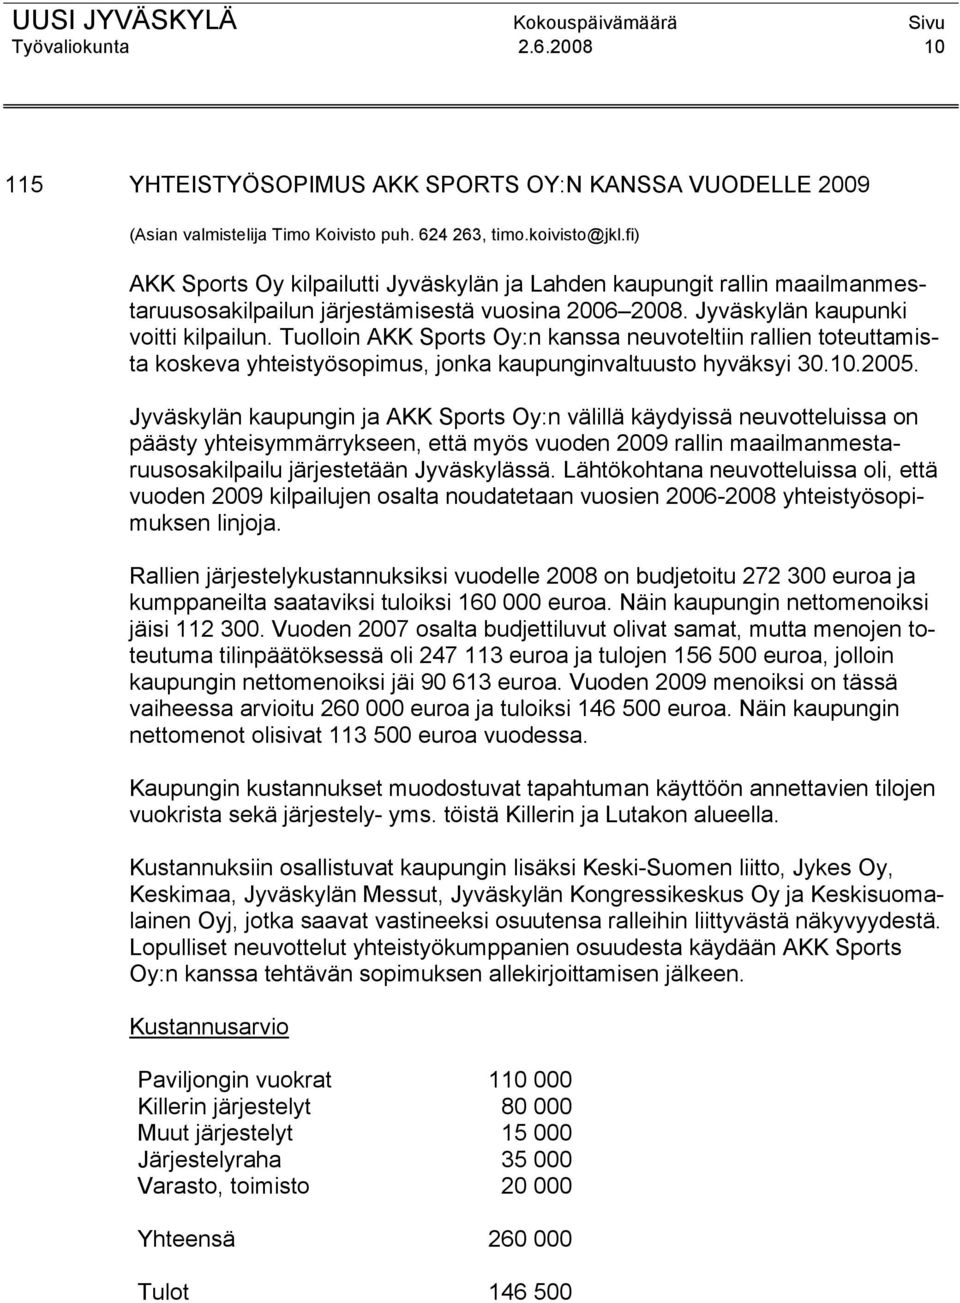 Tuolloin AKK Sports Oy:n kanssa neuvoteltiin rallien toteuttamista koskeva yhteistyösopimus, jonka kaupunginvaltuusto hyväksyi 30.10.2005.